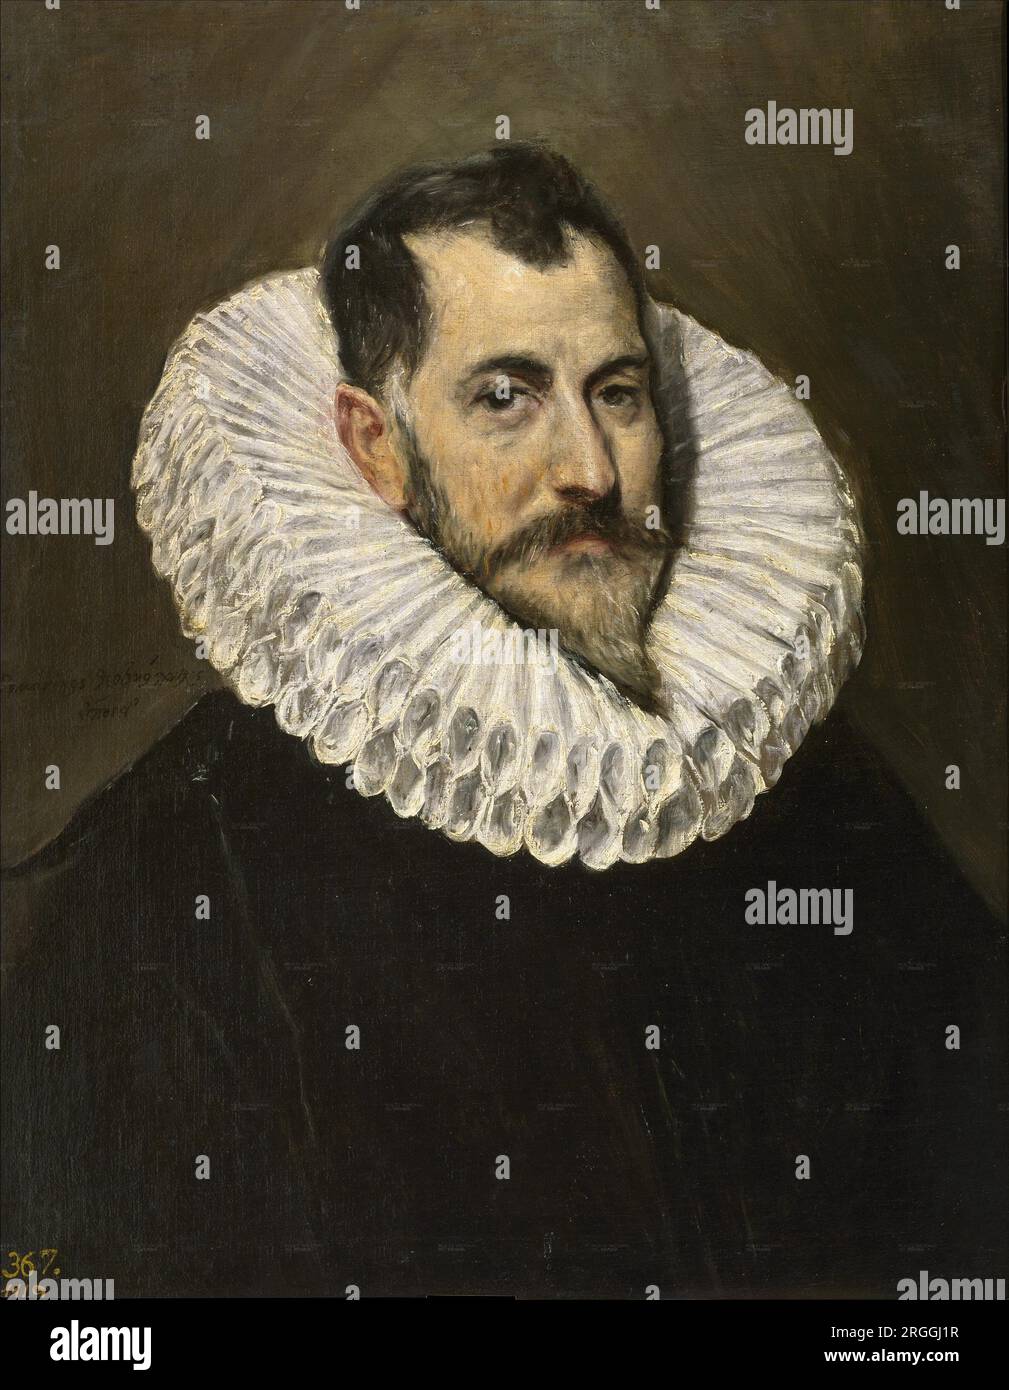 Retrato de un caballero desconocido between 1600 and 1605 by El Greco Stock Photo